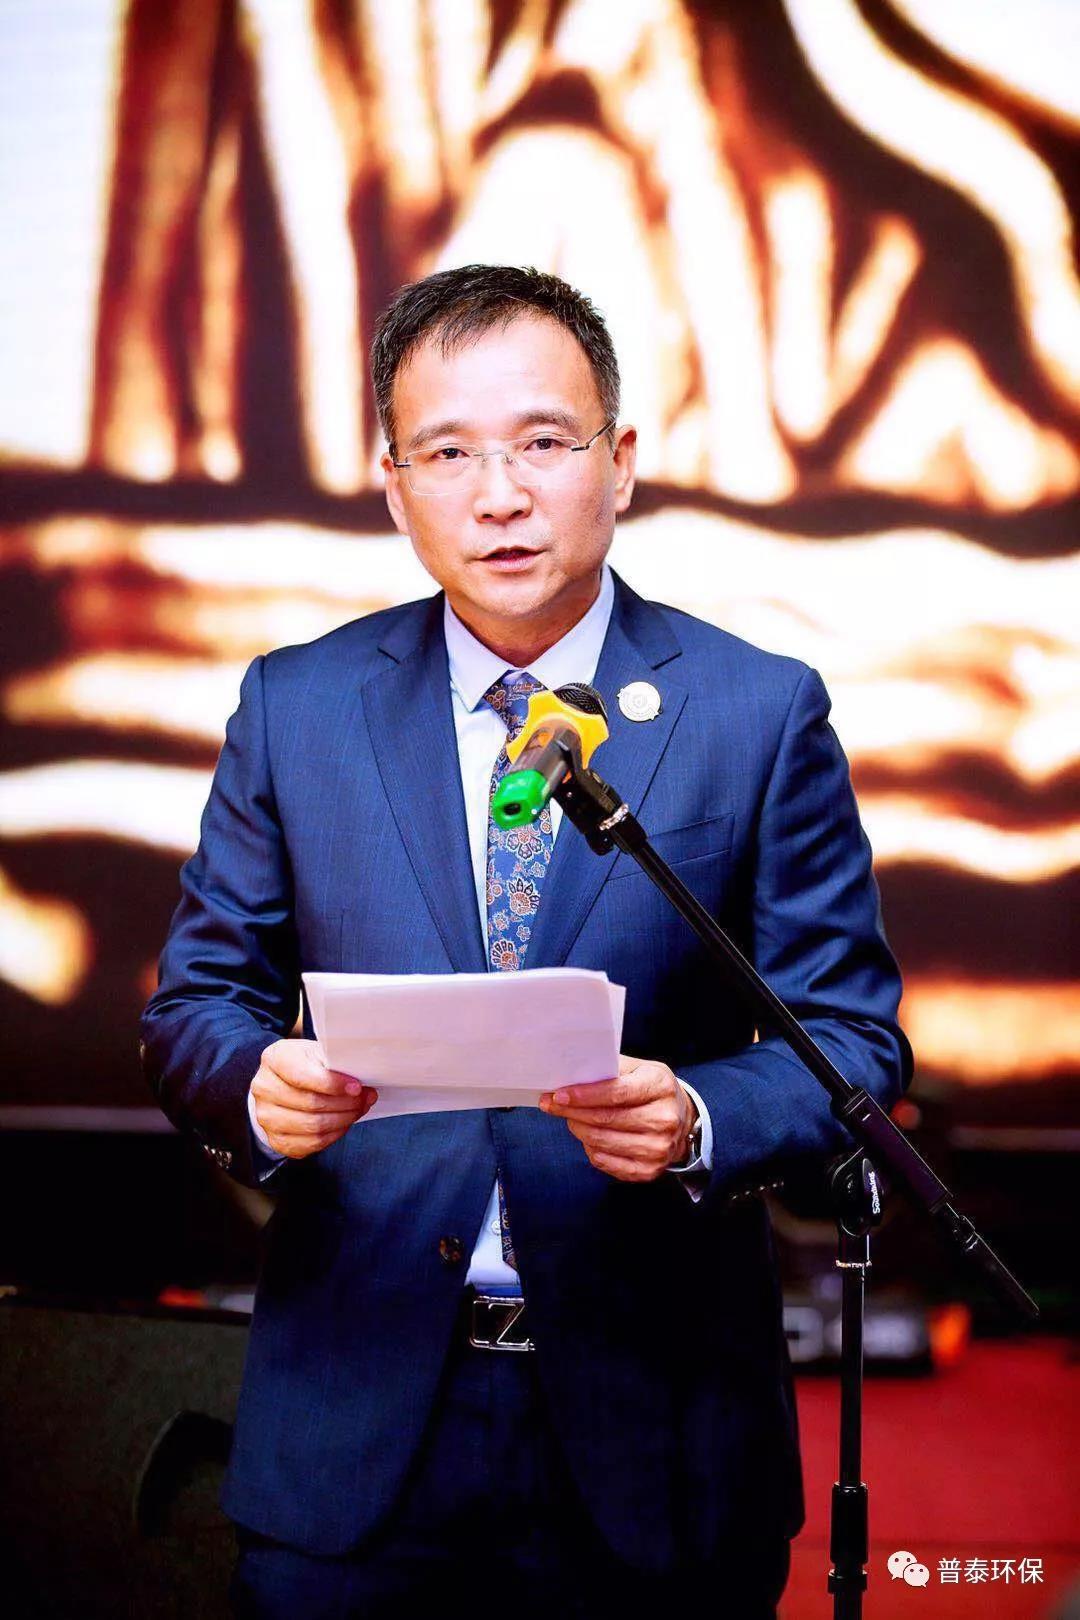 西安益维普泰环保股份有限公司 董事长苏林东先生